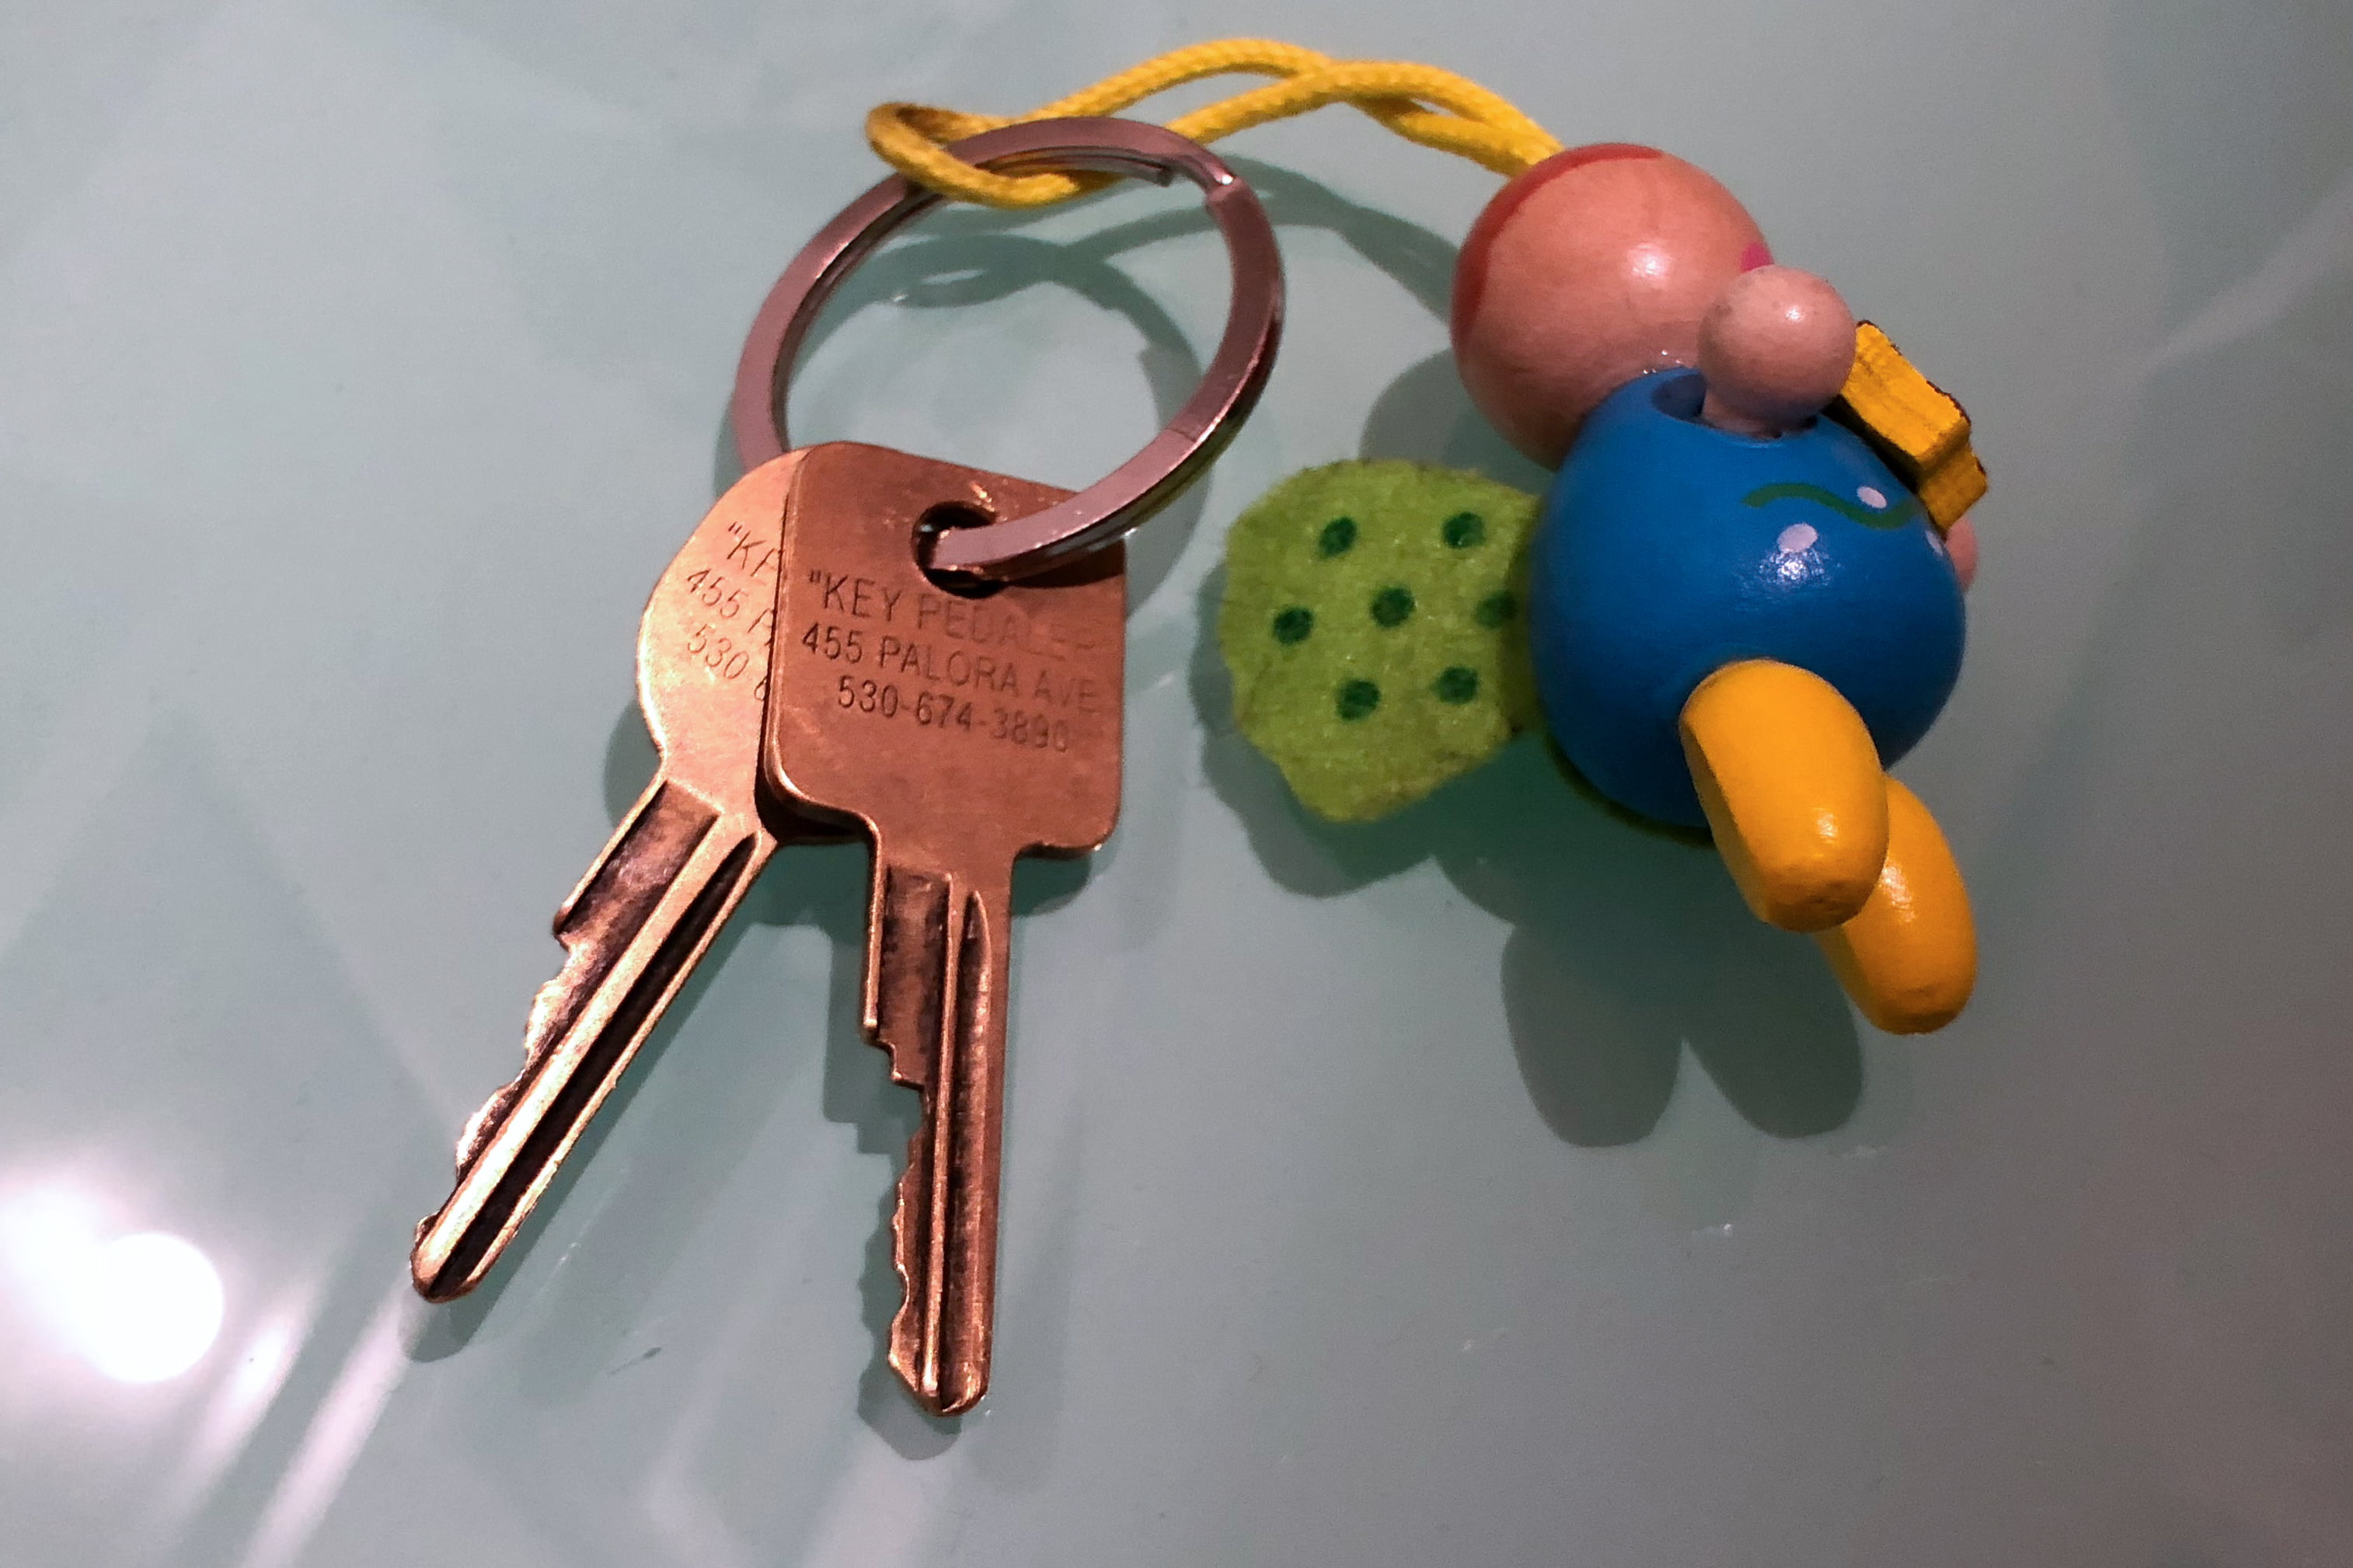 Schlüssel vom KeyPedaler